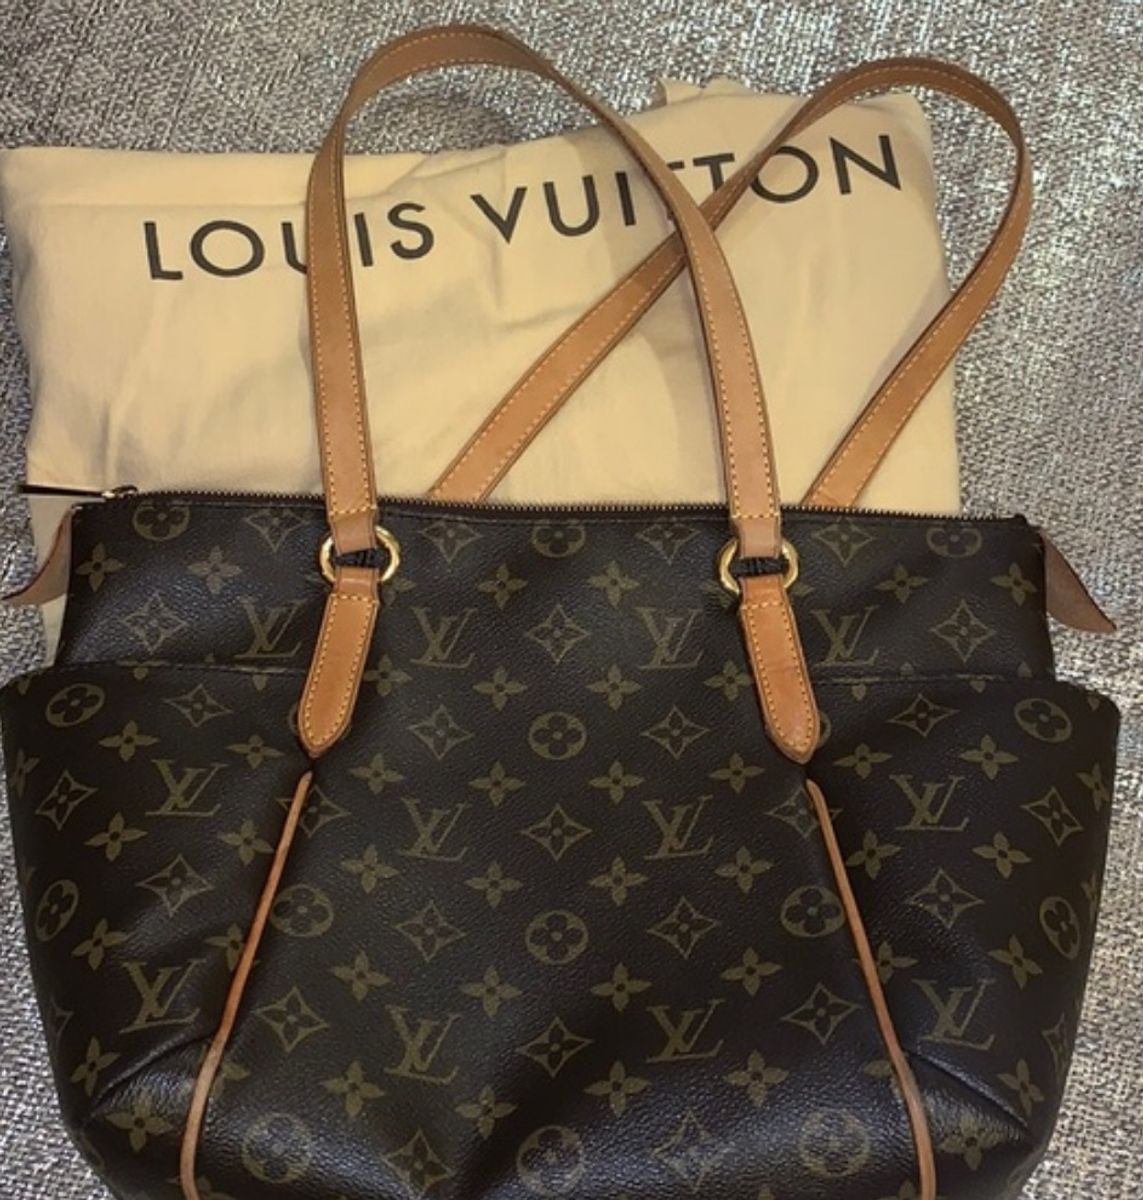 Bolsa Saco Louis Vitton, Bolsa de Ombro Feminina Louis Vuitton Nunca Usado  53000975